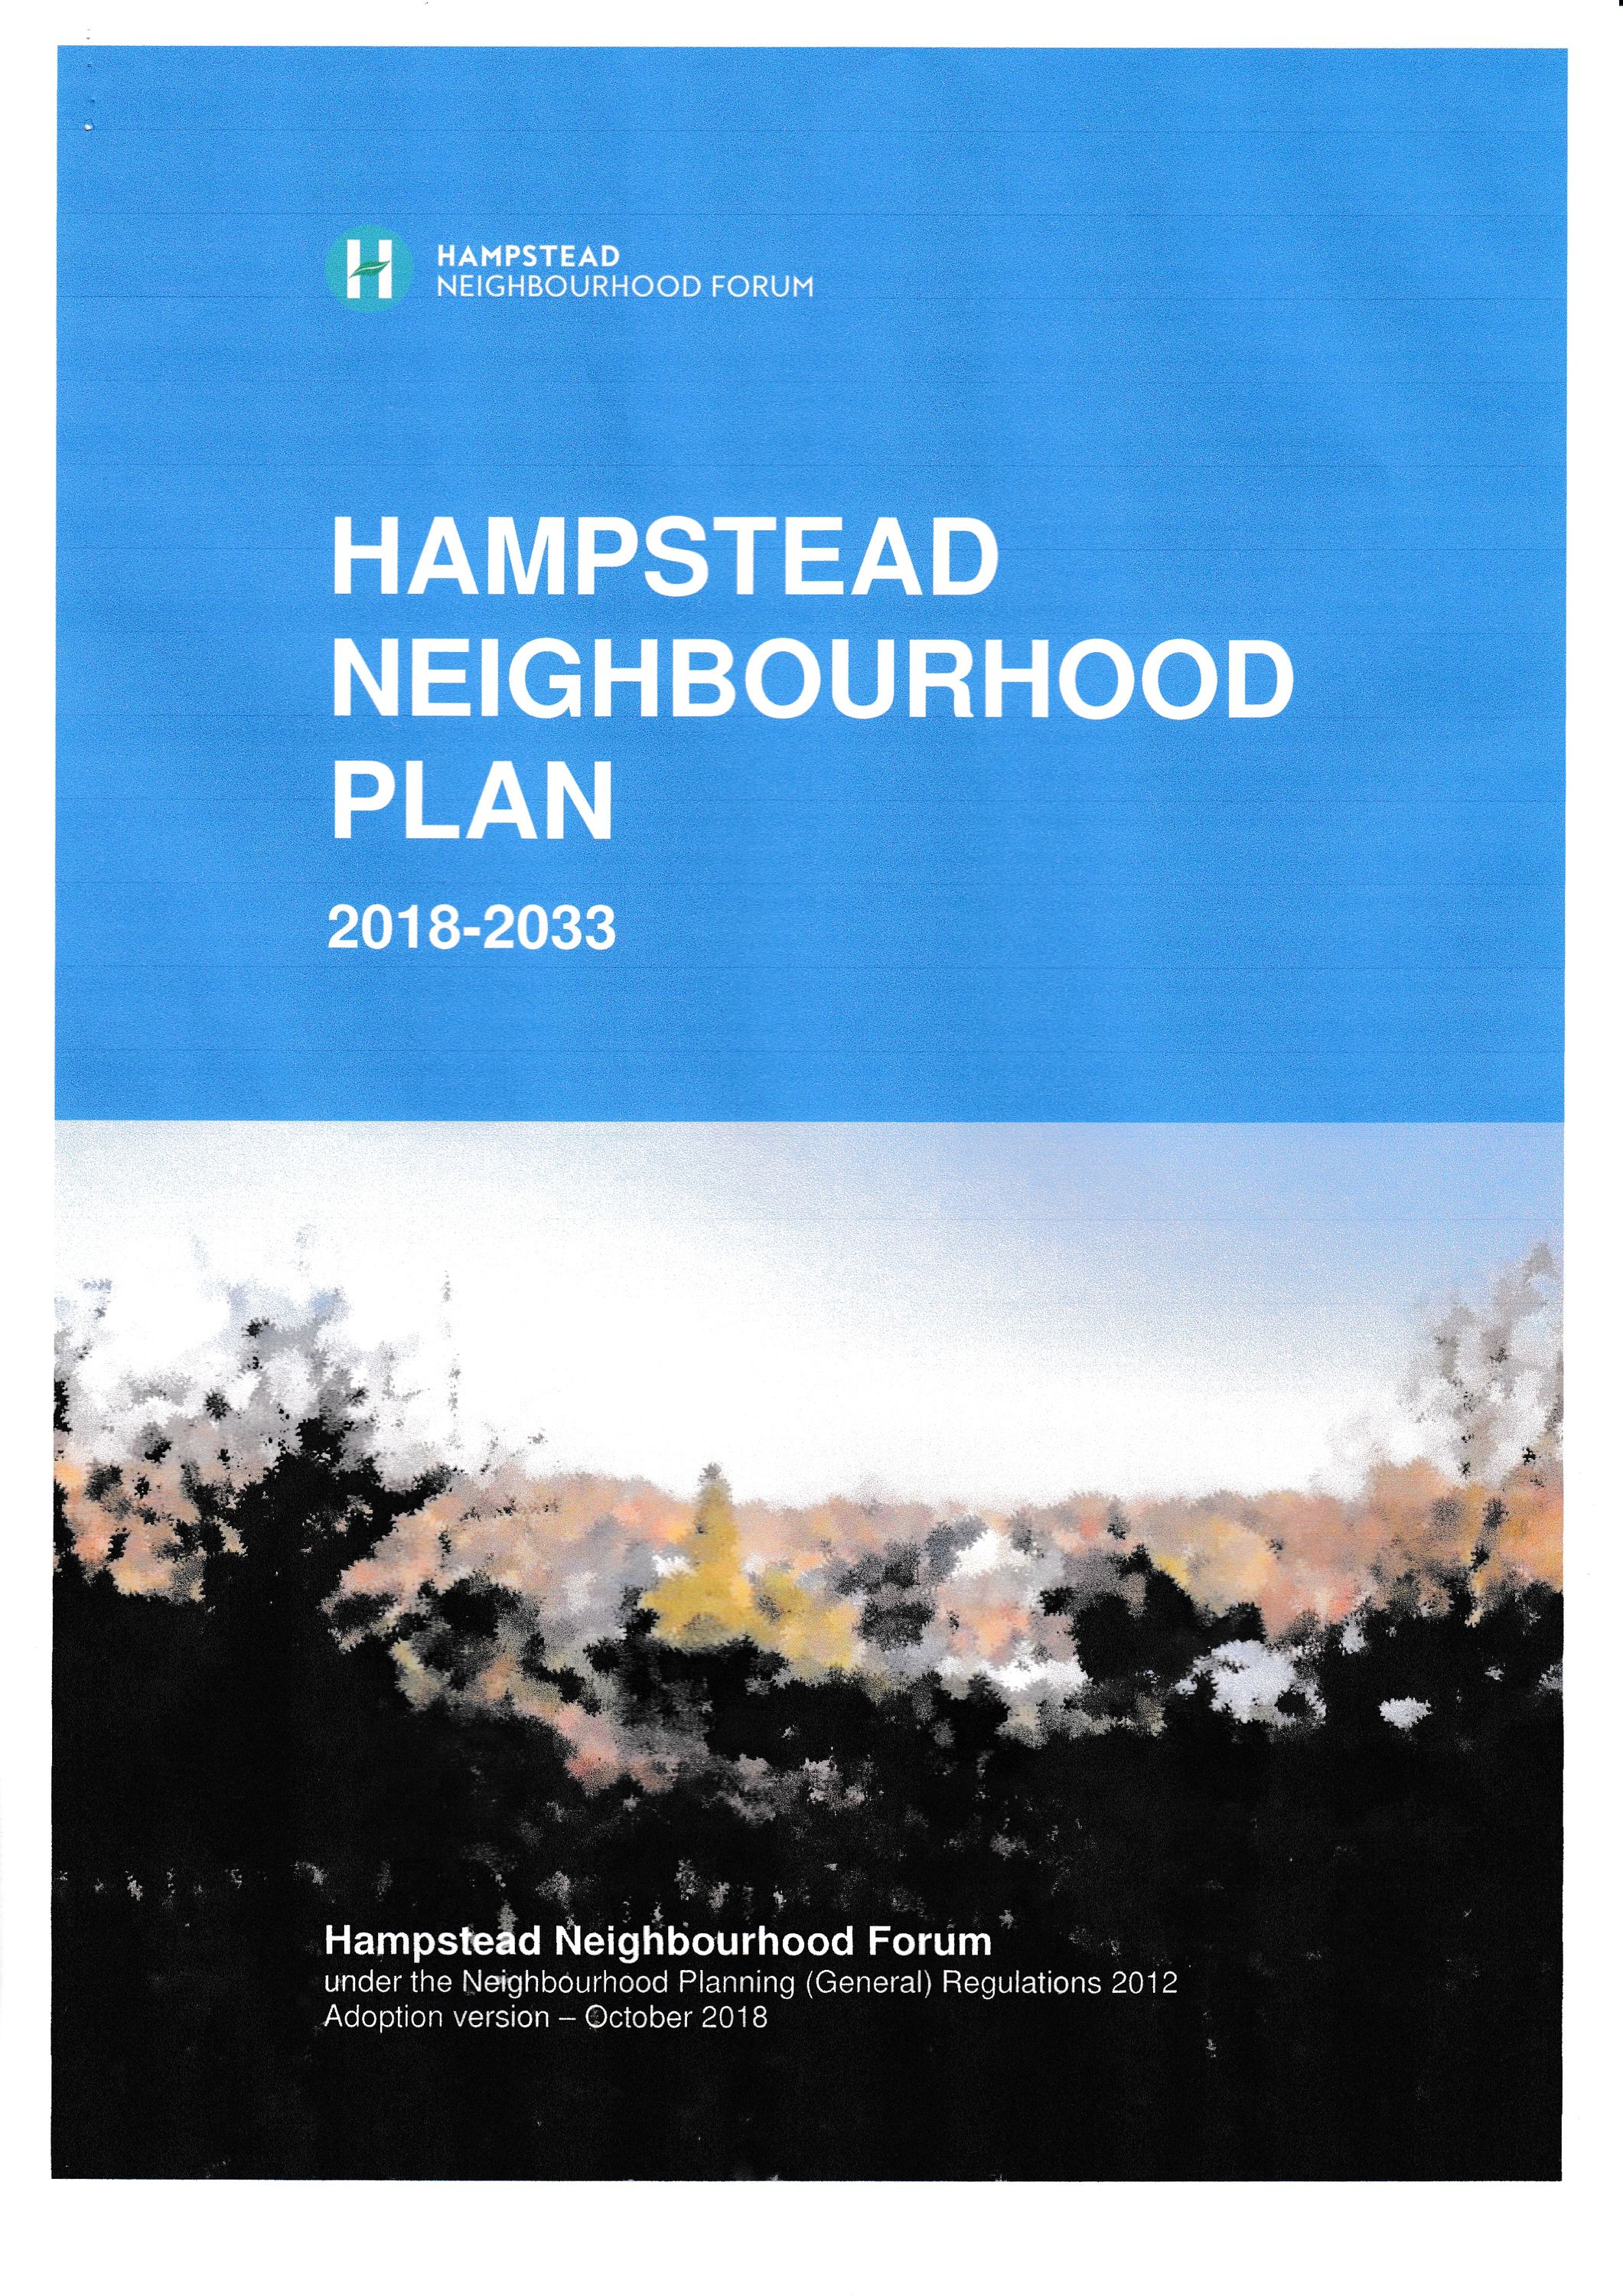 The Hampstead Neighbourhood Plan